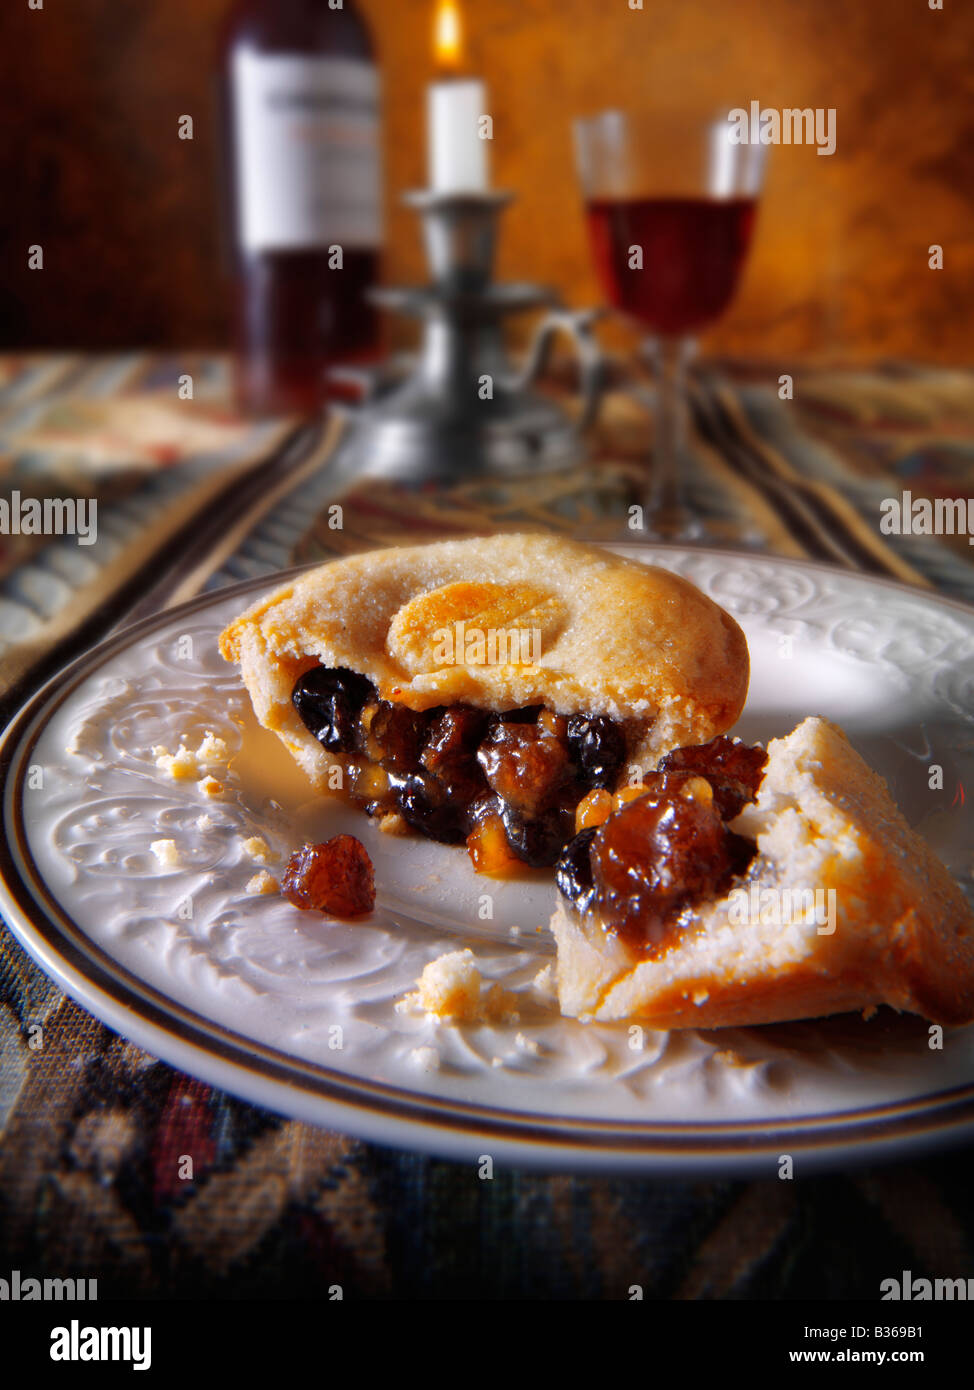 Primo piano di mince pie cucinate fresche in un ambiente festivo Foto Stock